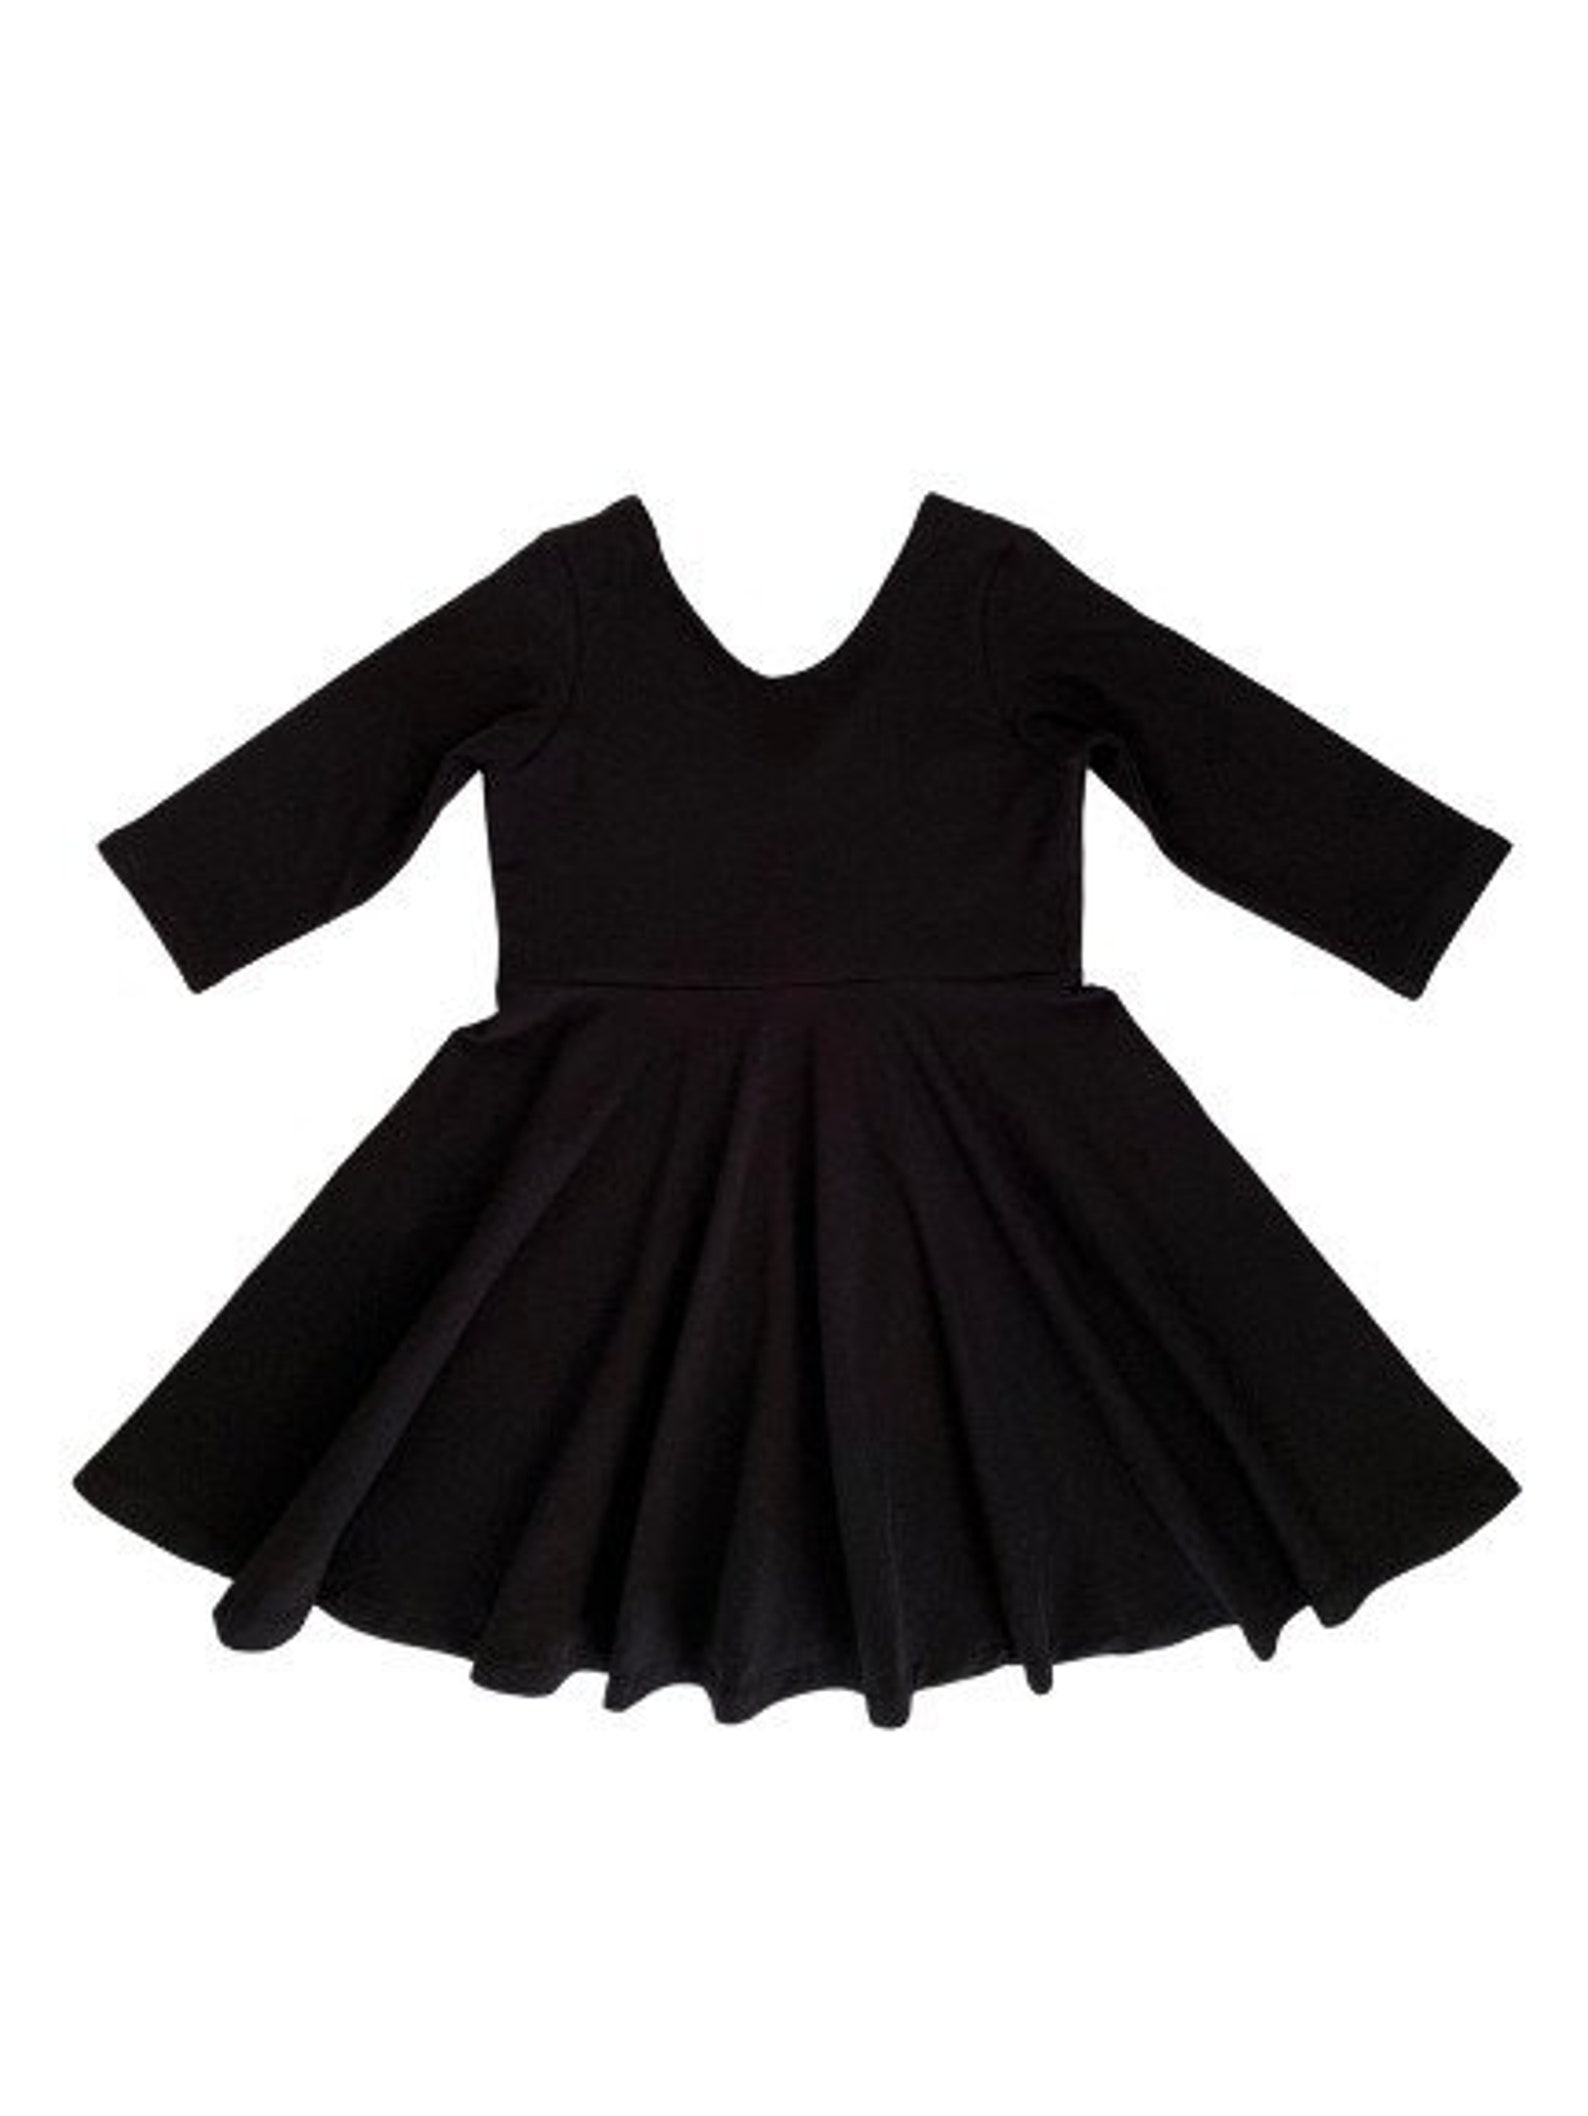 Black Dress Black Twirl Dress Little Black Dress Toddler - Etsy